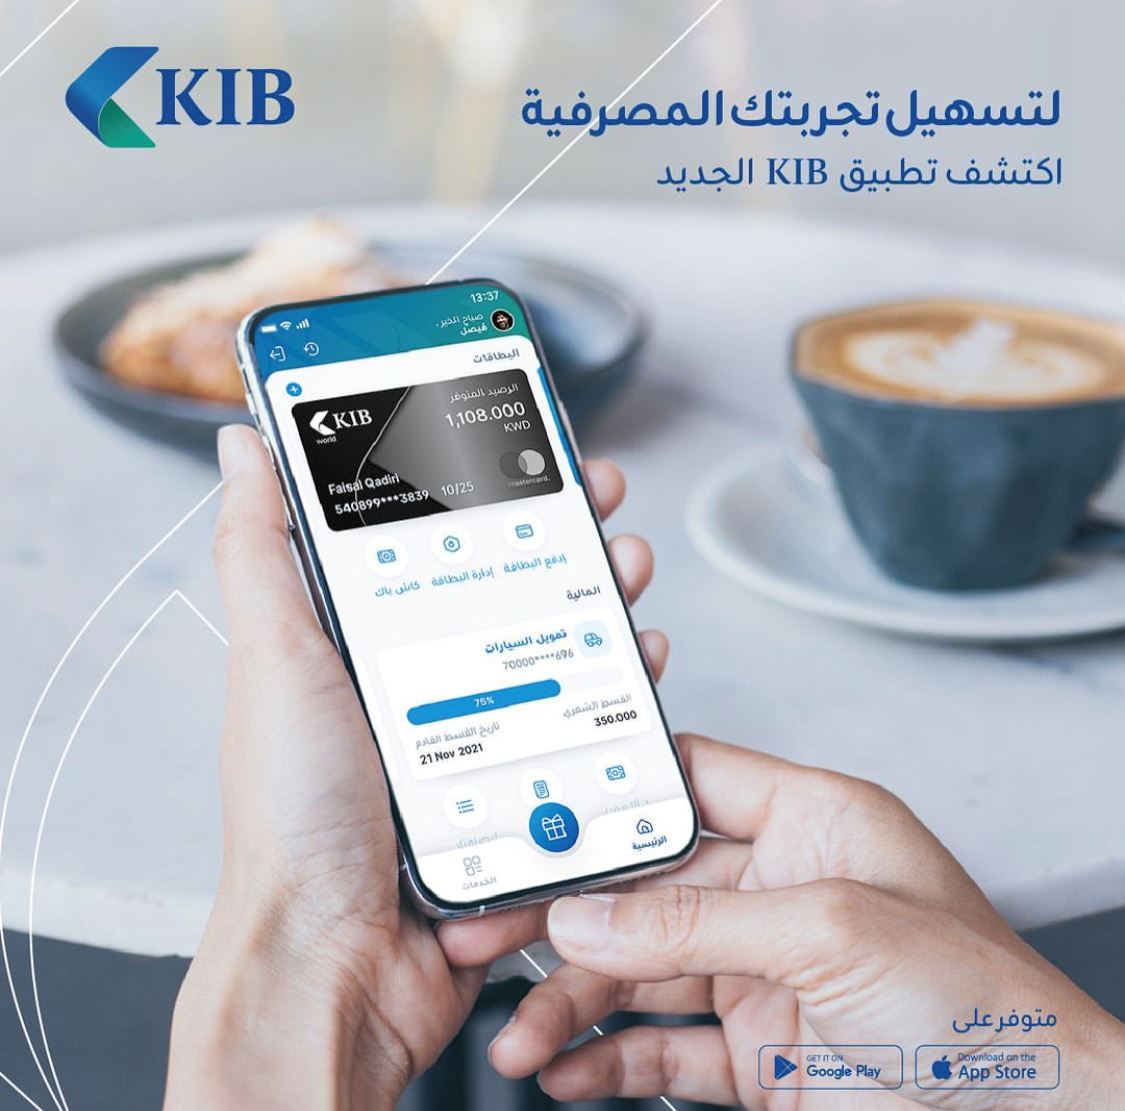 KIB’s retail banking app KIB Mobile gets a new look